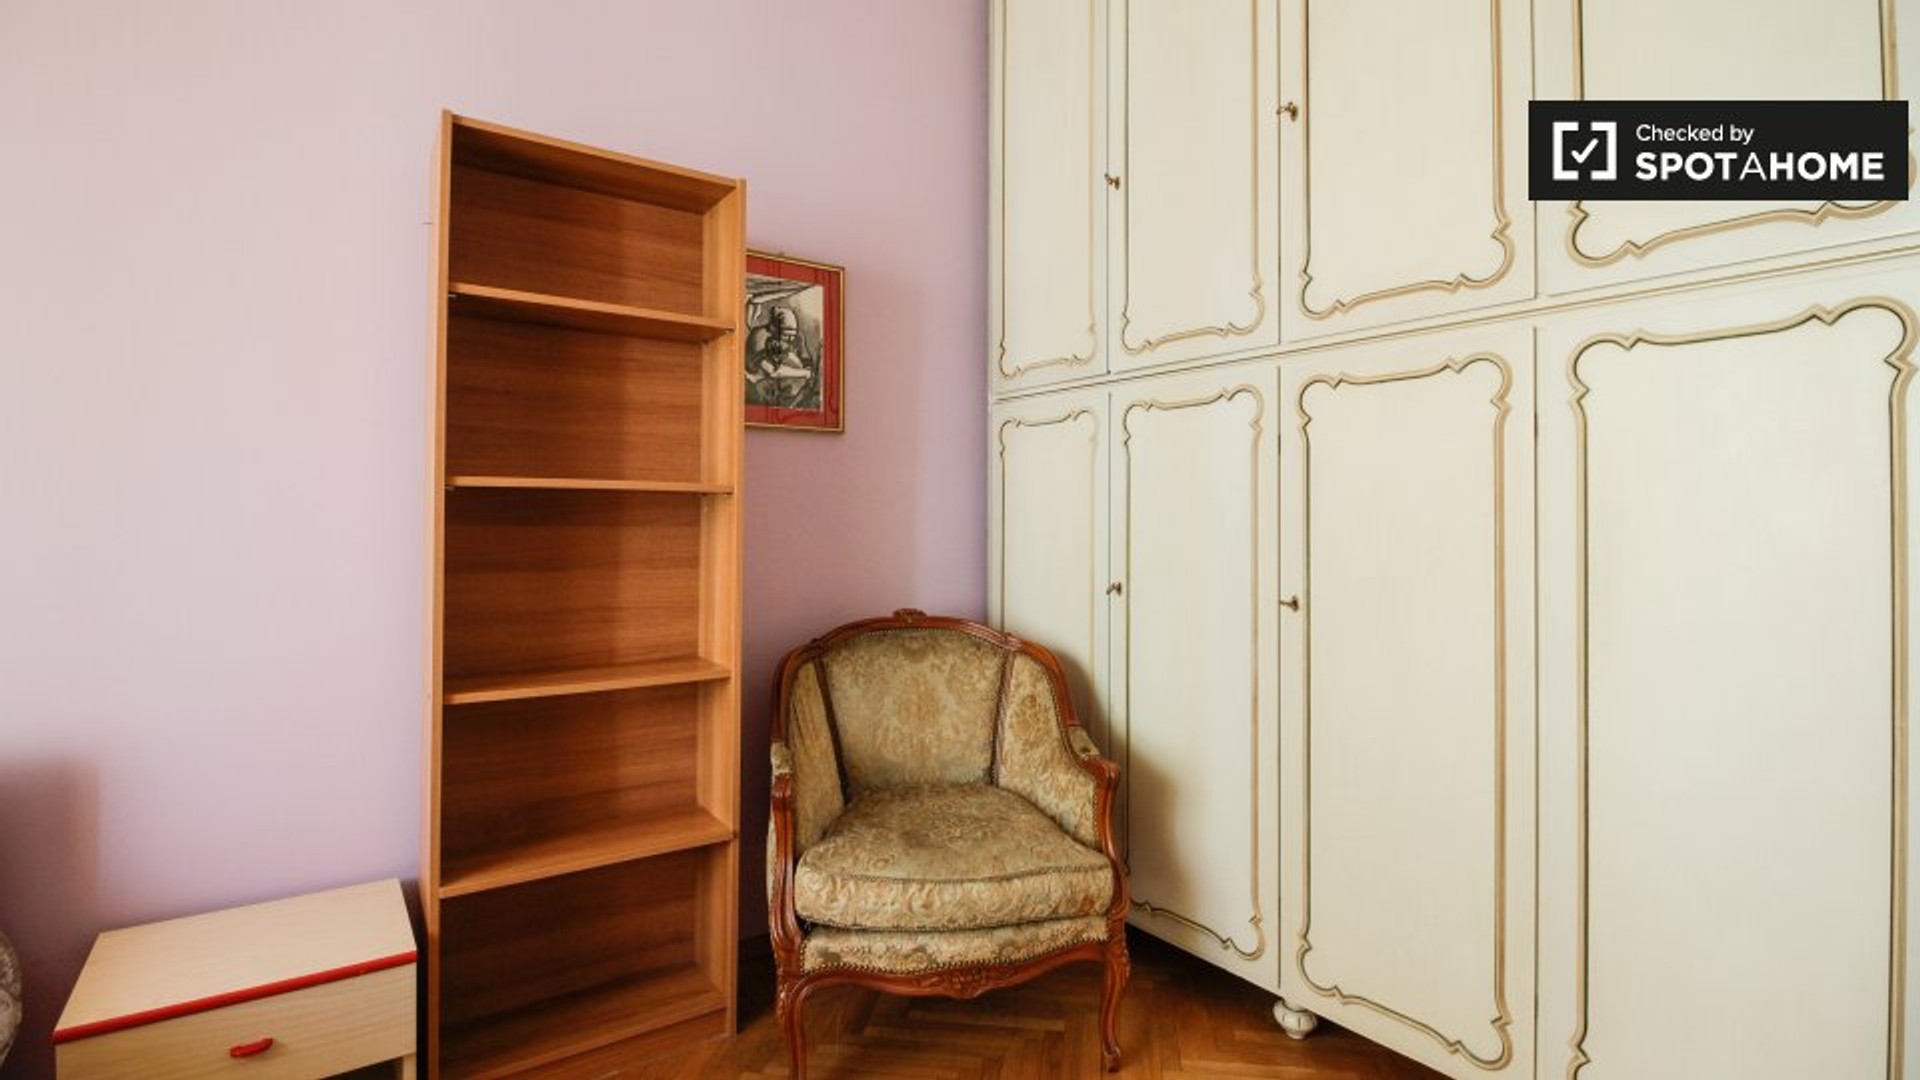 Chambre à louer avec lit double Turin